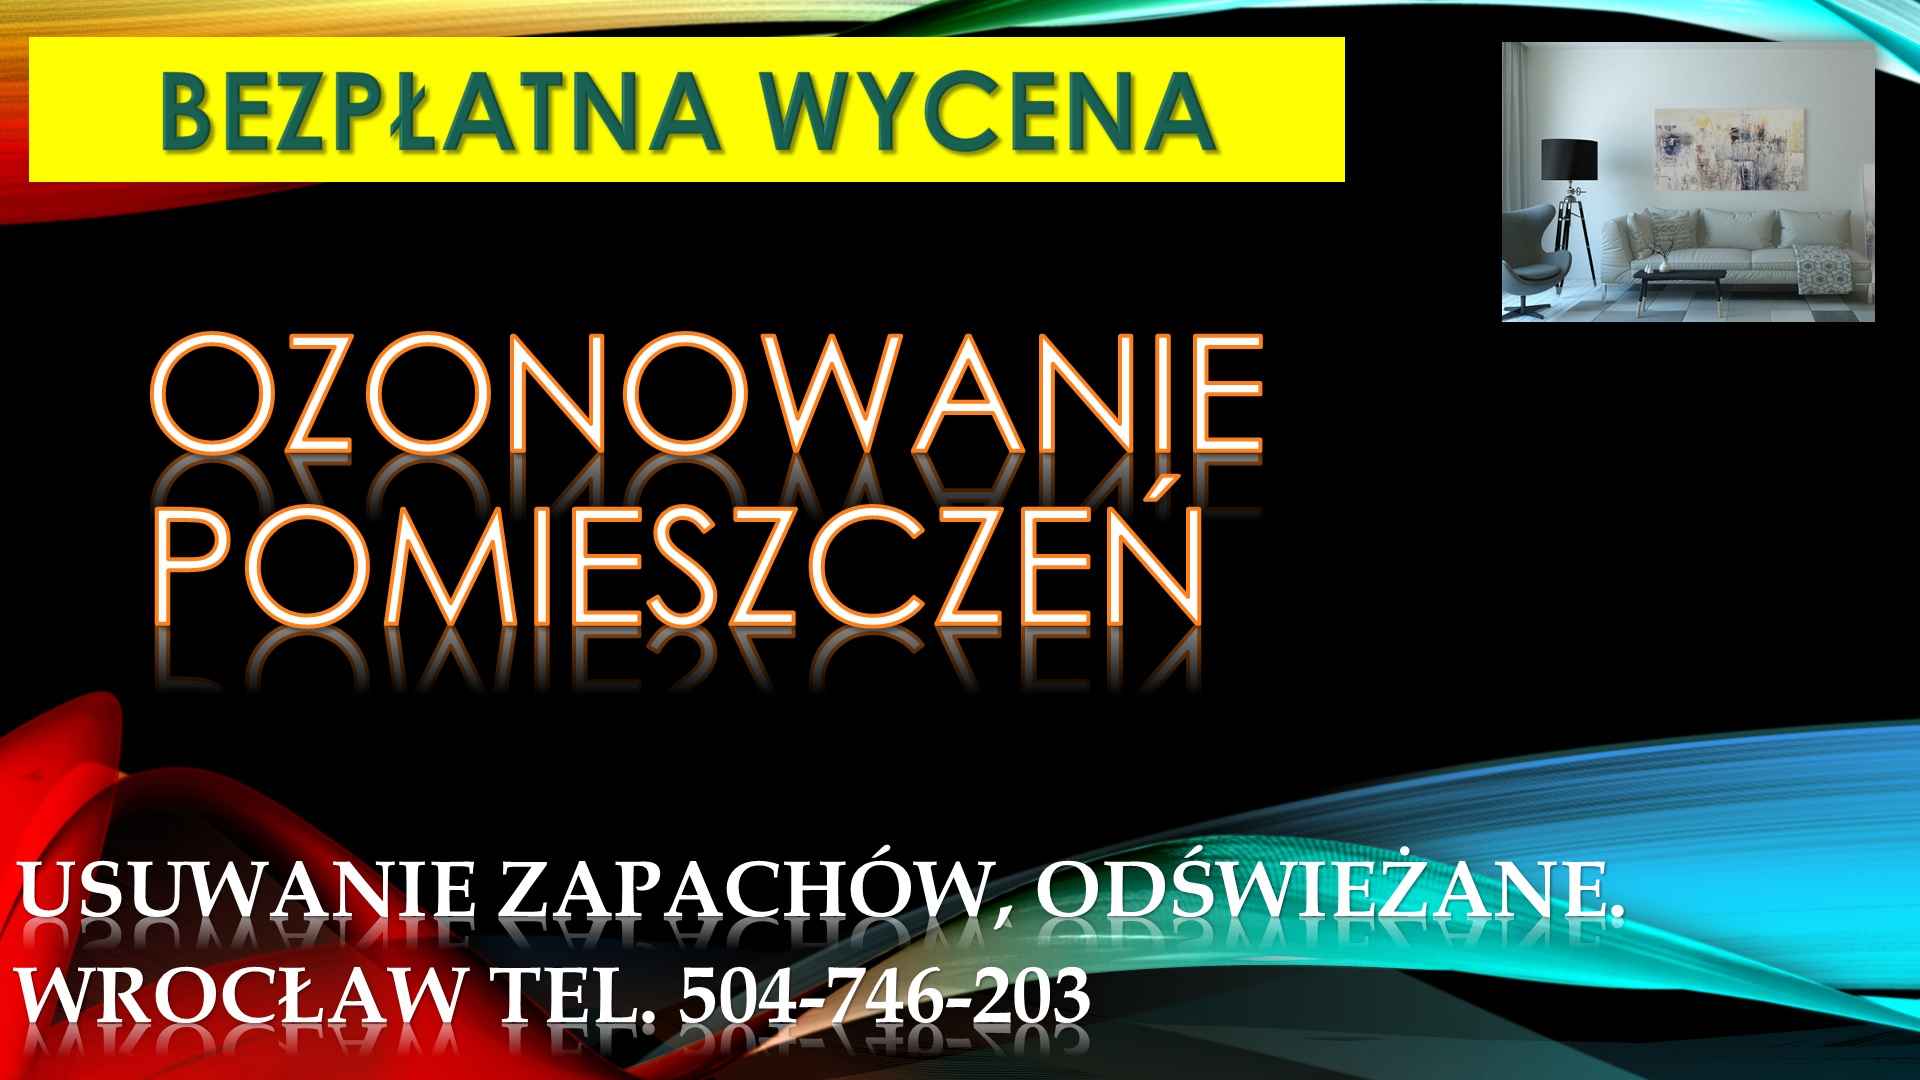 Ozonowanie mieszkań, Wrocław, t. 504-746-203. usunięcie zapachu, cena Psie Pole - zdjęcie 3